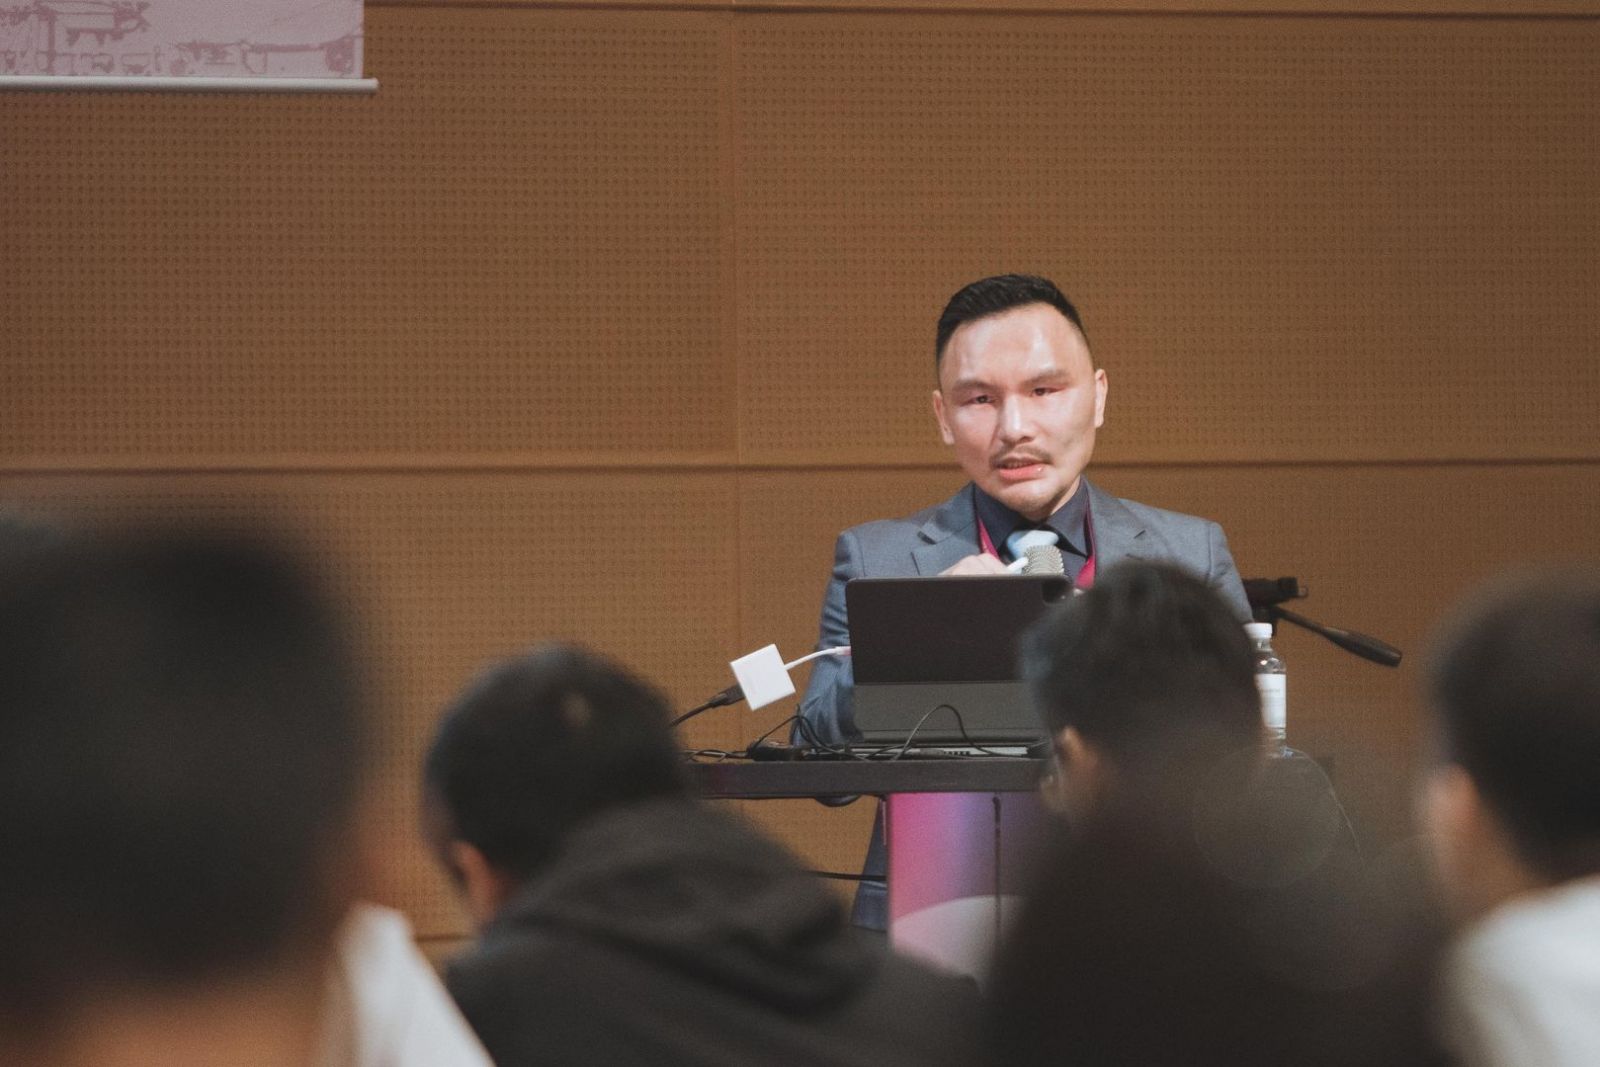 林上立醫師受邀在台灣皮膚科醫學年會暨亞洲皮膚病理學會(ASD)中，演講分享 SculpSure 治療經驗